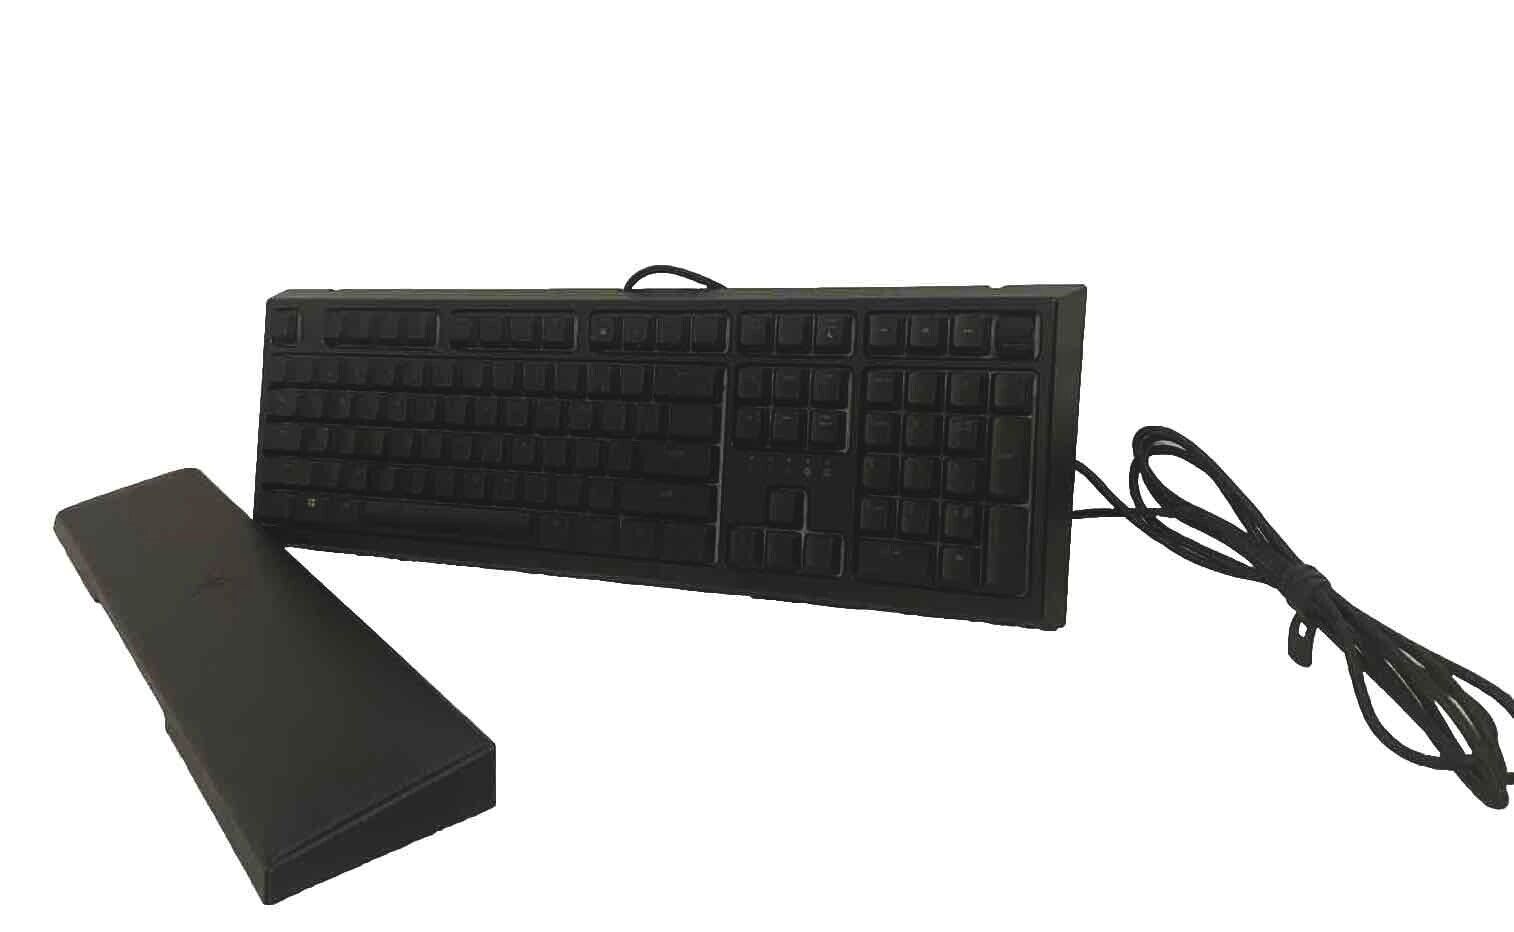 Razer Ornata V2 100% Gaming Keyboard, Hybrid Mecha Membrane switches + Full RGB